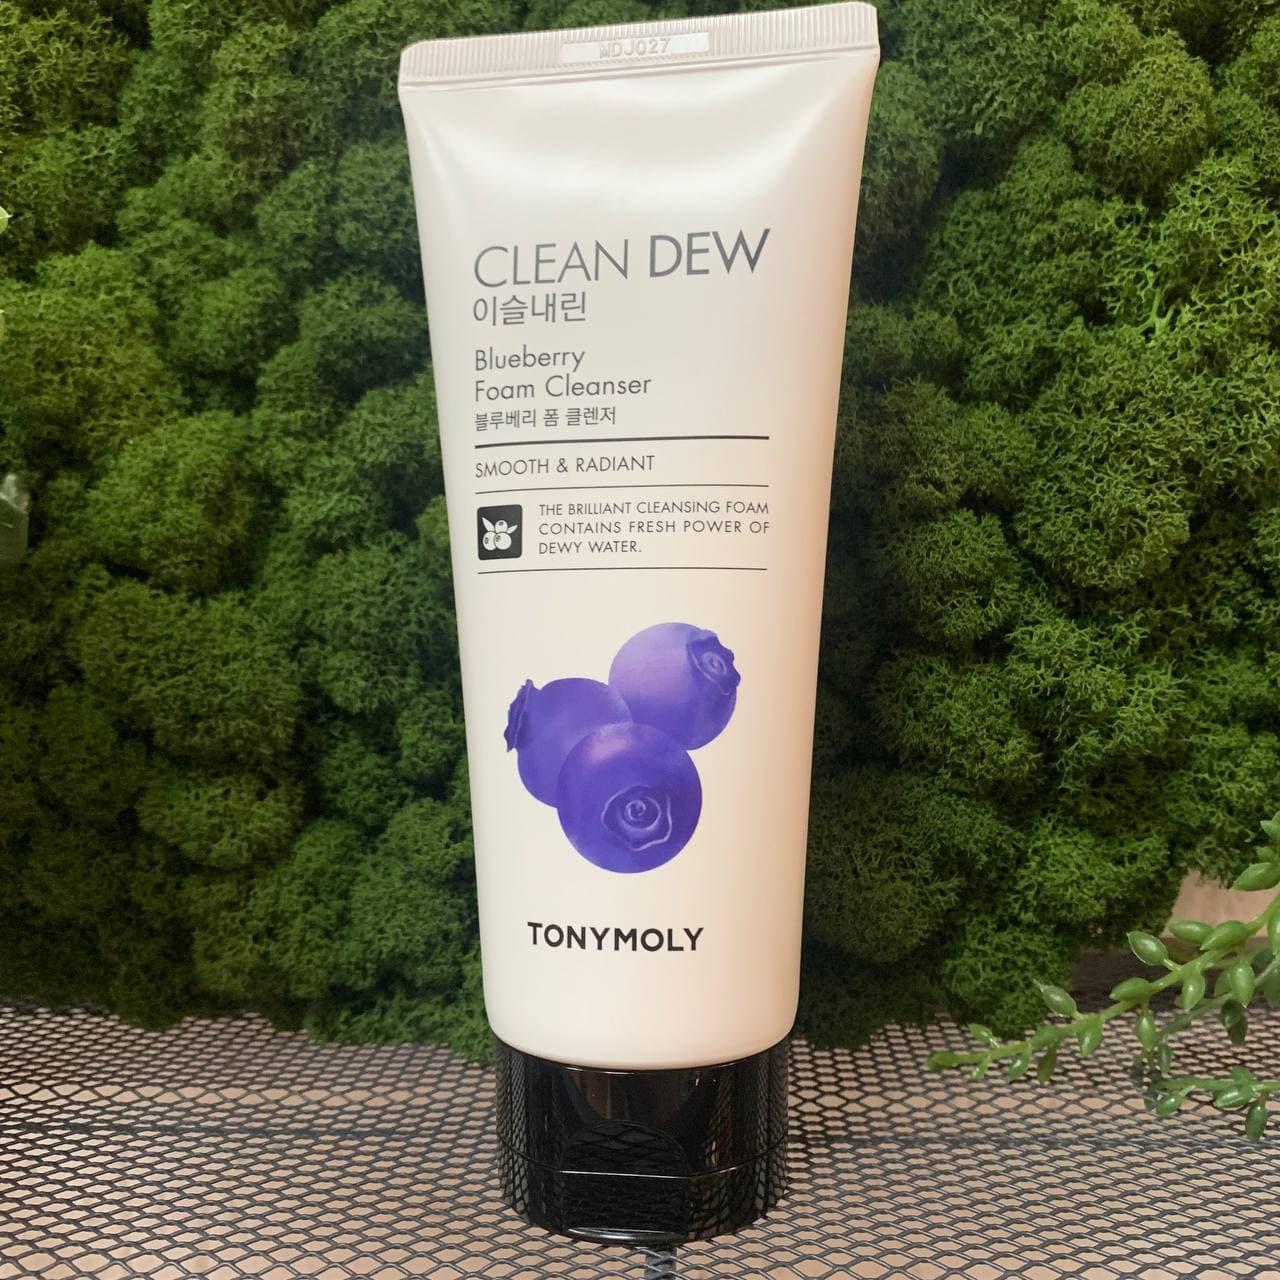 Пенка с экстрактом черники для очищения кожи лица TONY MOLY Clean Dew Blueberry Foam Cleanser